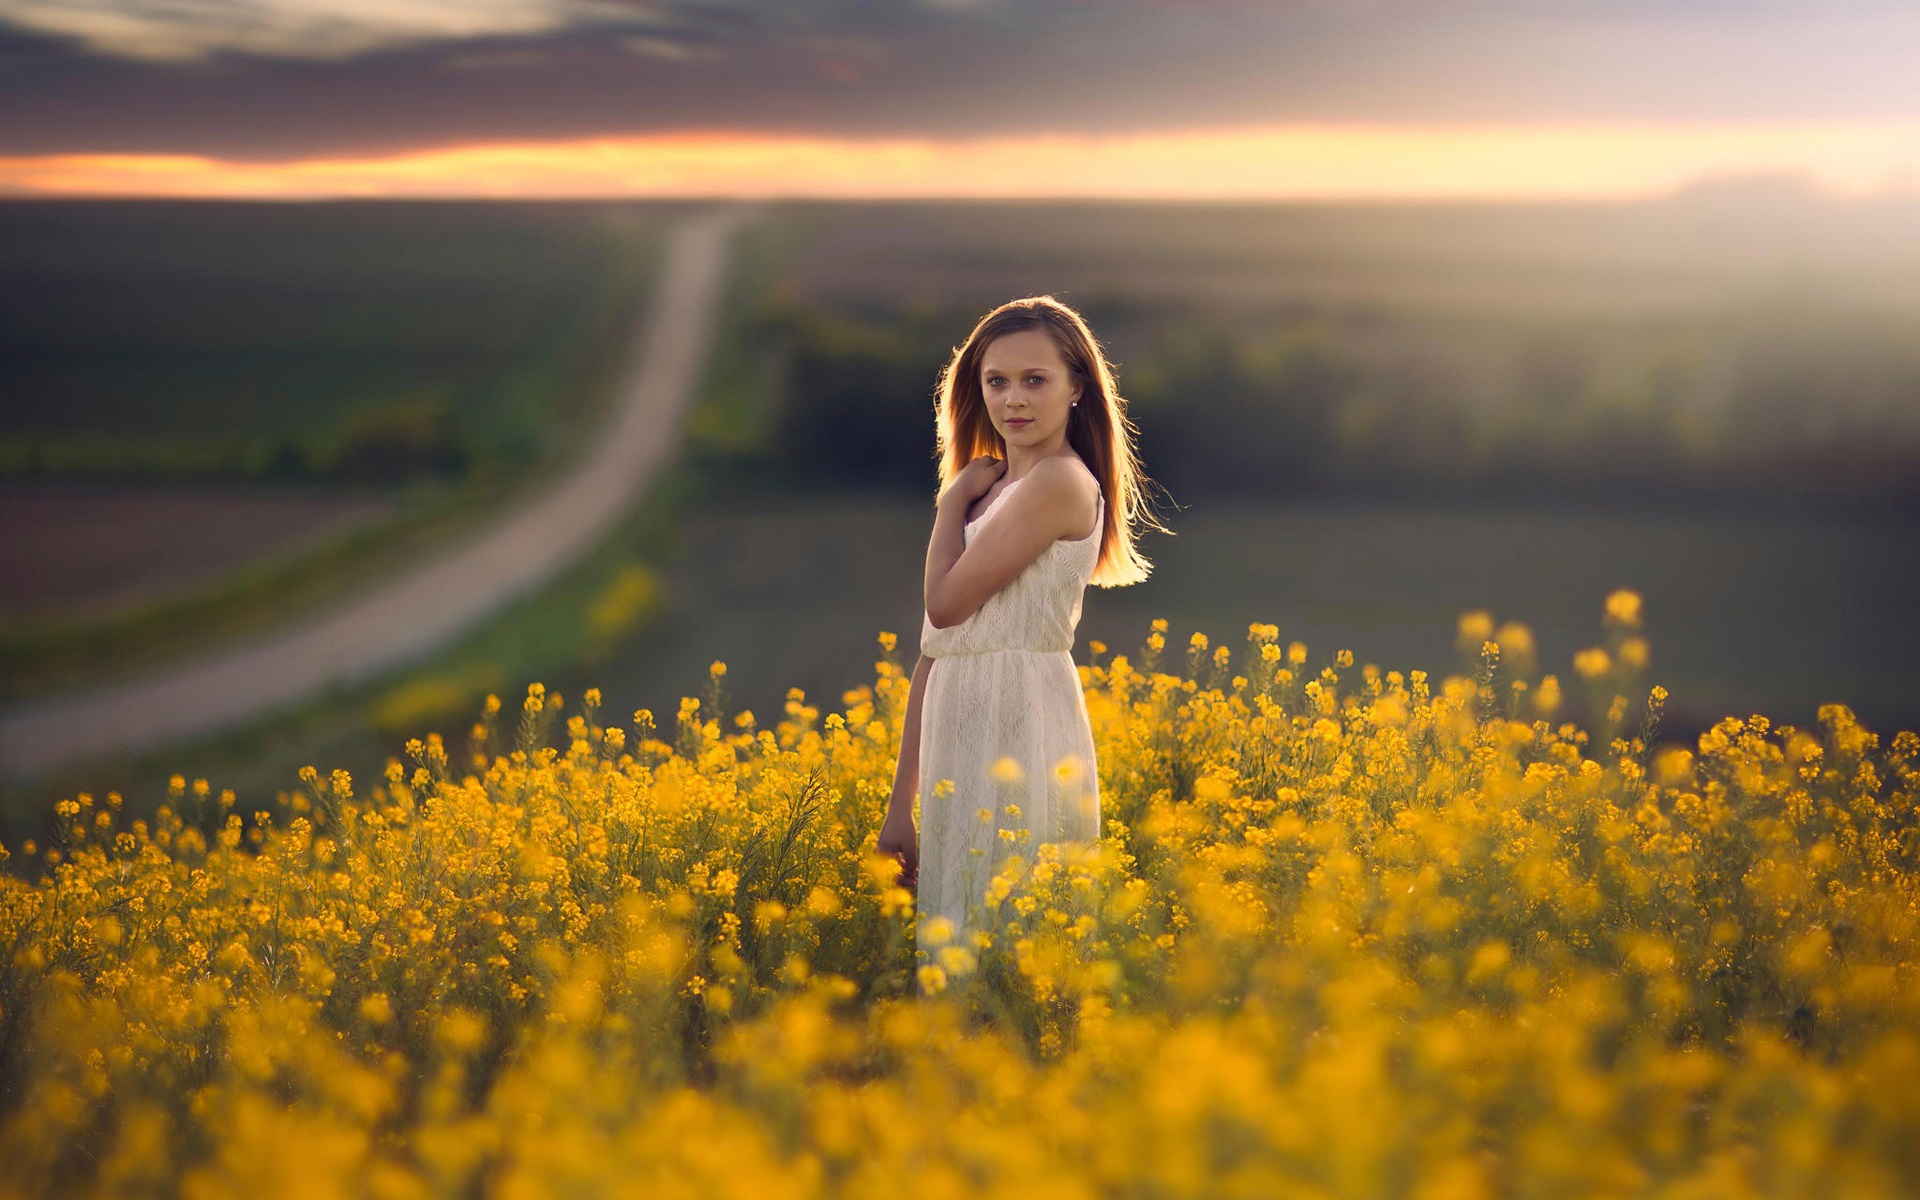 White-dress-girl-golden-canola-flowers_1920x1200.jpg